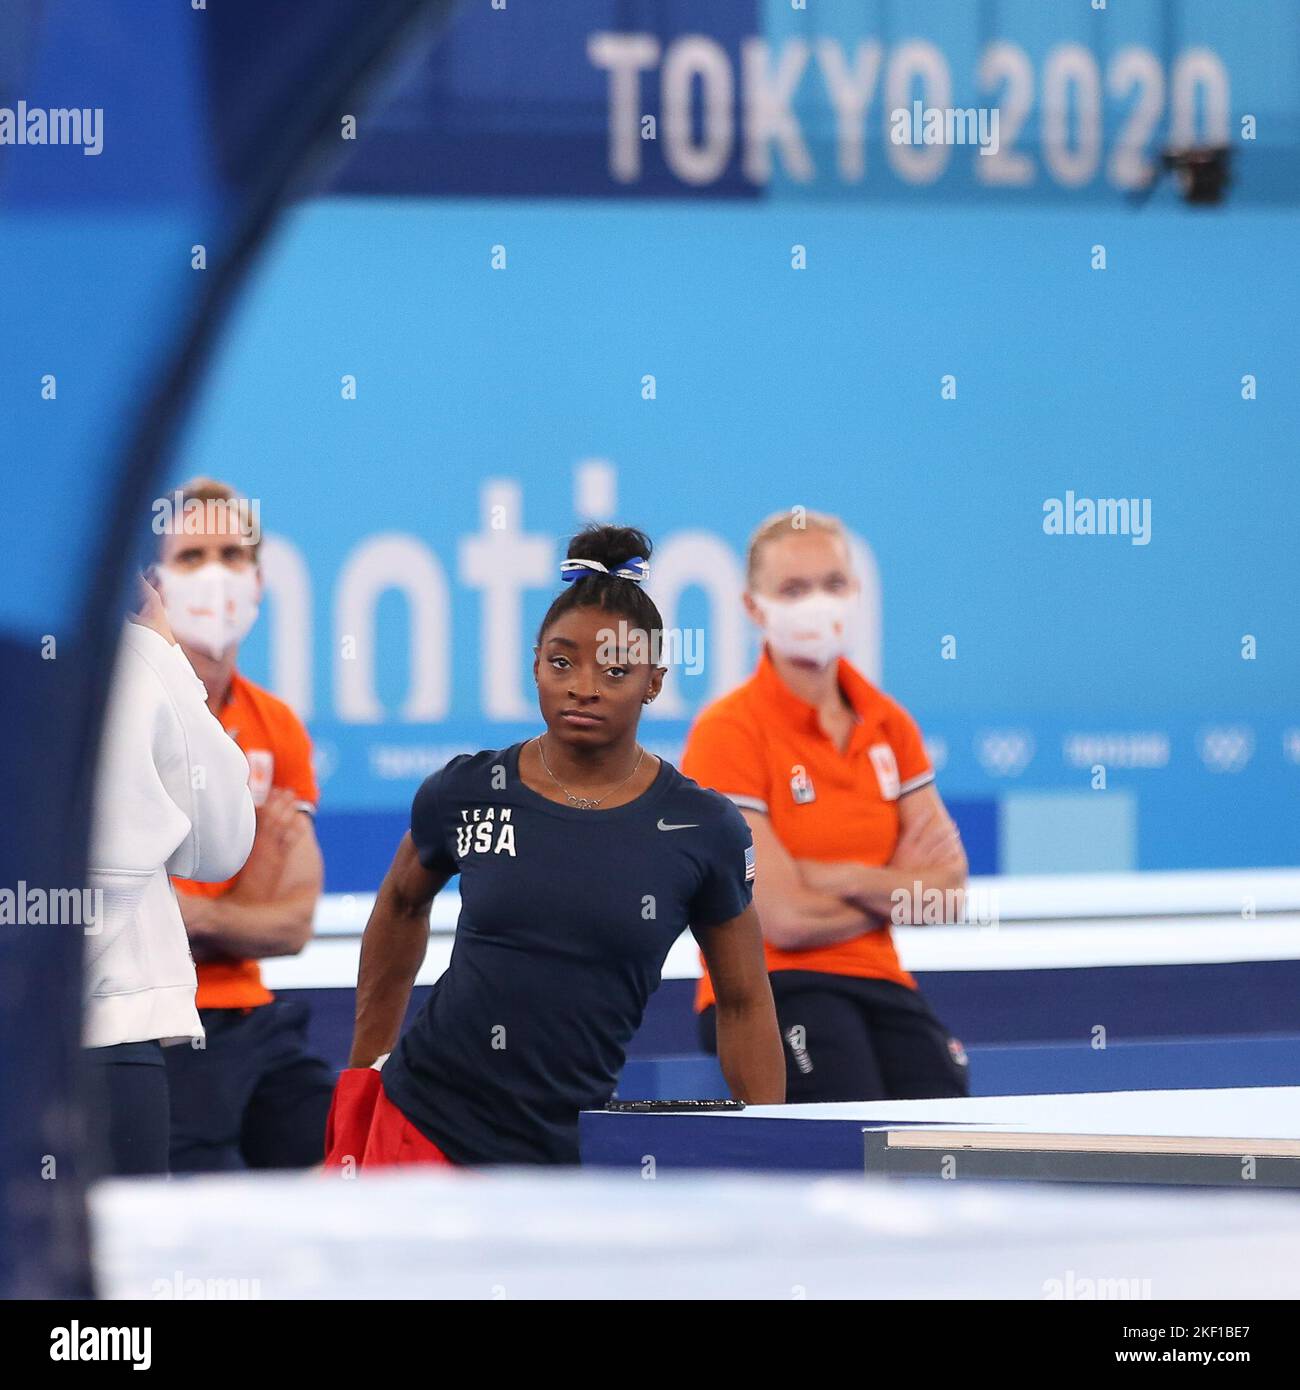 03rd AGOSTO 2021 - TOKYO, GIAPPONE: Simone BILES degli Stati Uniti in procinto di esibirsi al raggio di equilibrio delle donne durante le finali degli apparati di ginnastica artistica ai Giochi Olimpici di Tokyo 2020 (Foto di Mickael Chavet/RX) Foto Stock